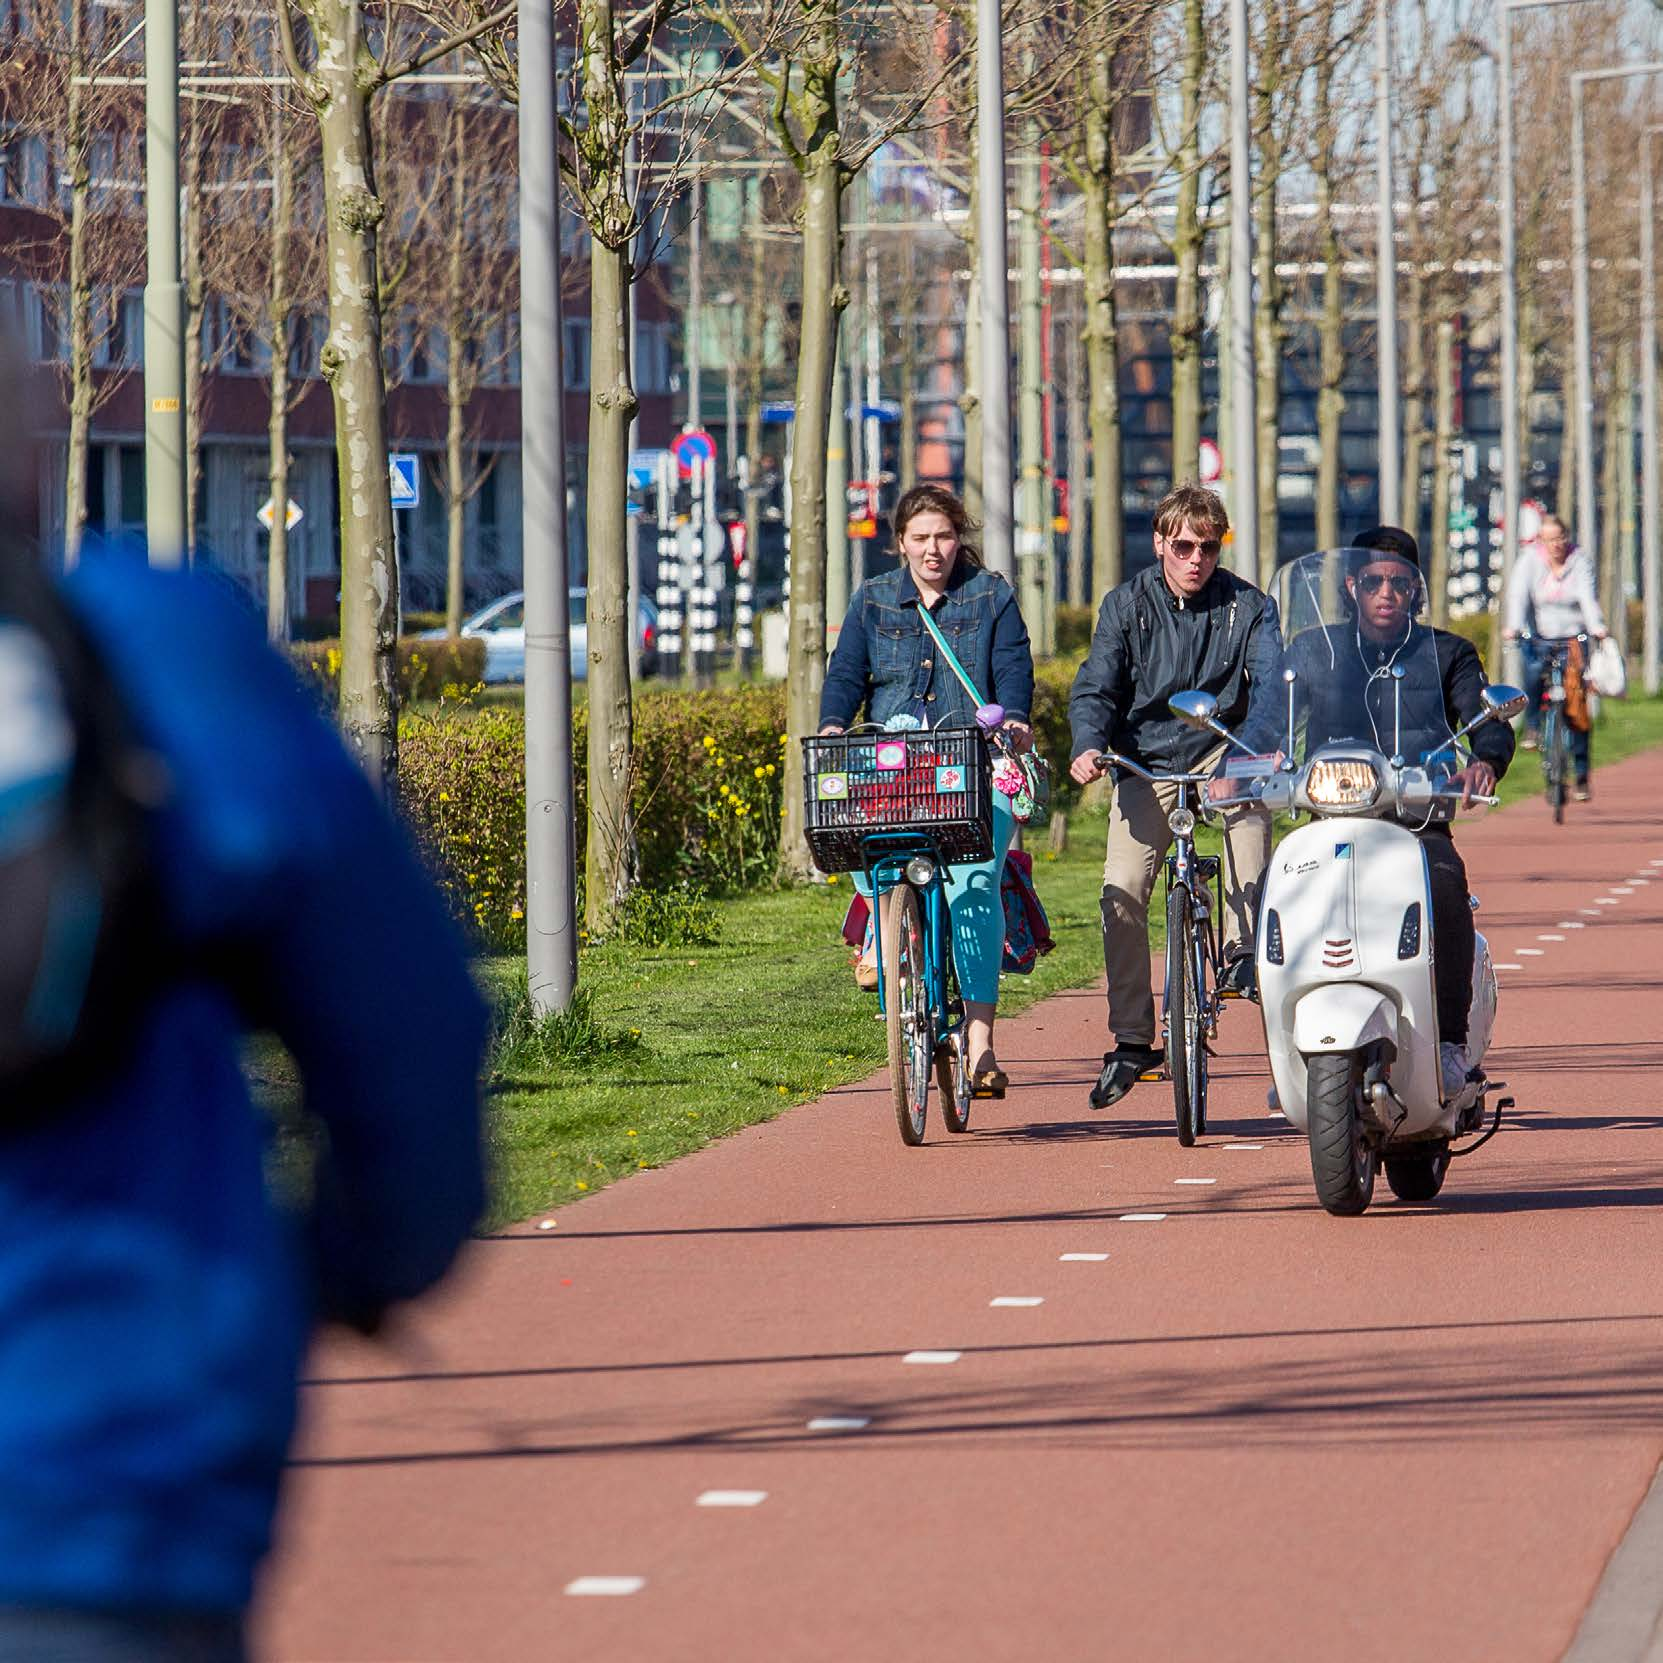 Gebruikers van het fietspad in de stad Op fietspaden in grote steden is het op specifieke locaties en tijdstippen te druk voor de breedte van het fietspad.